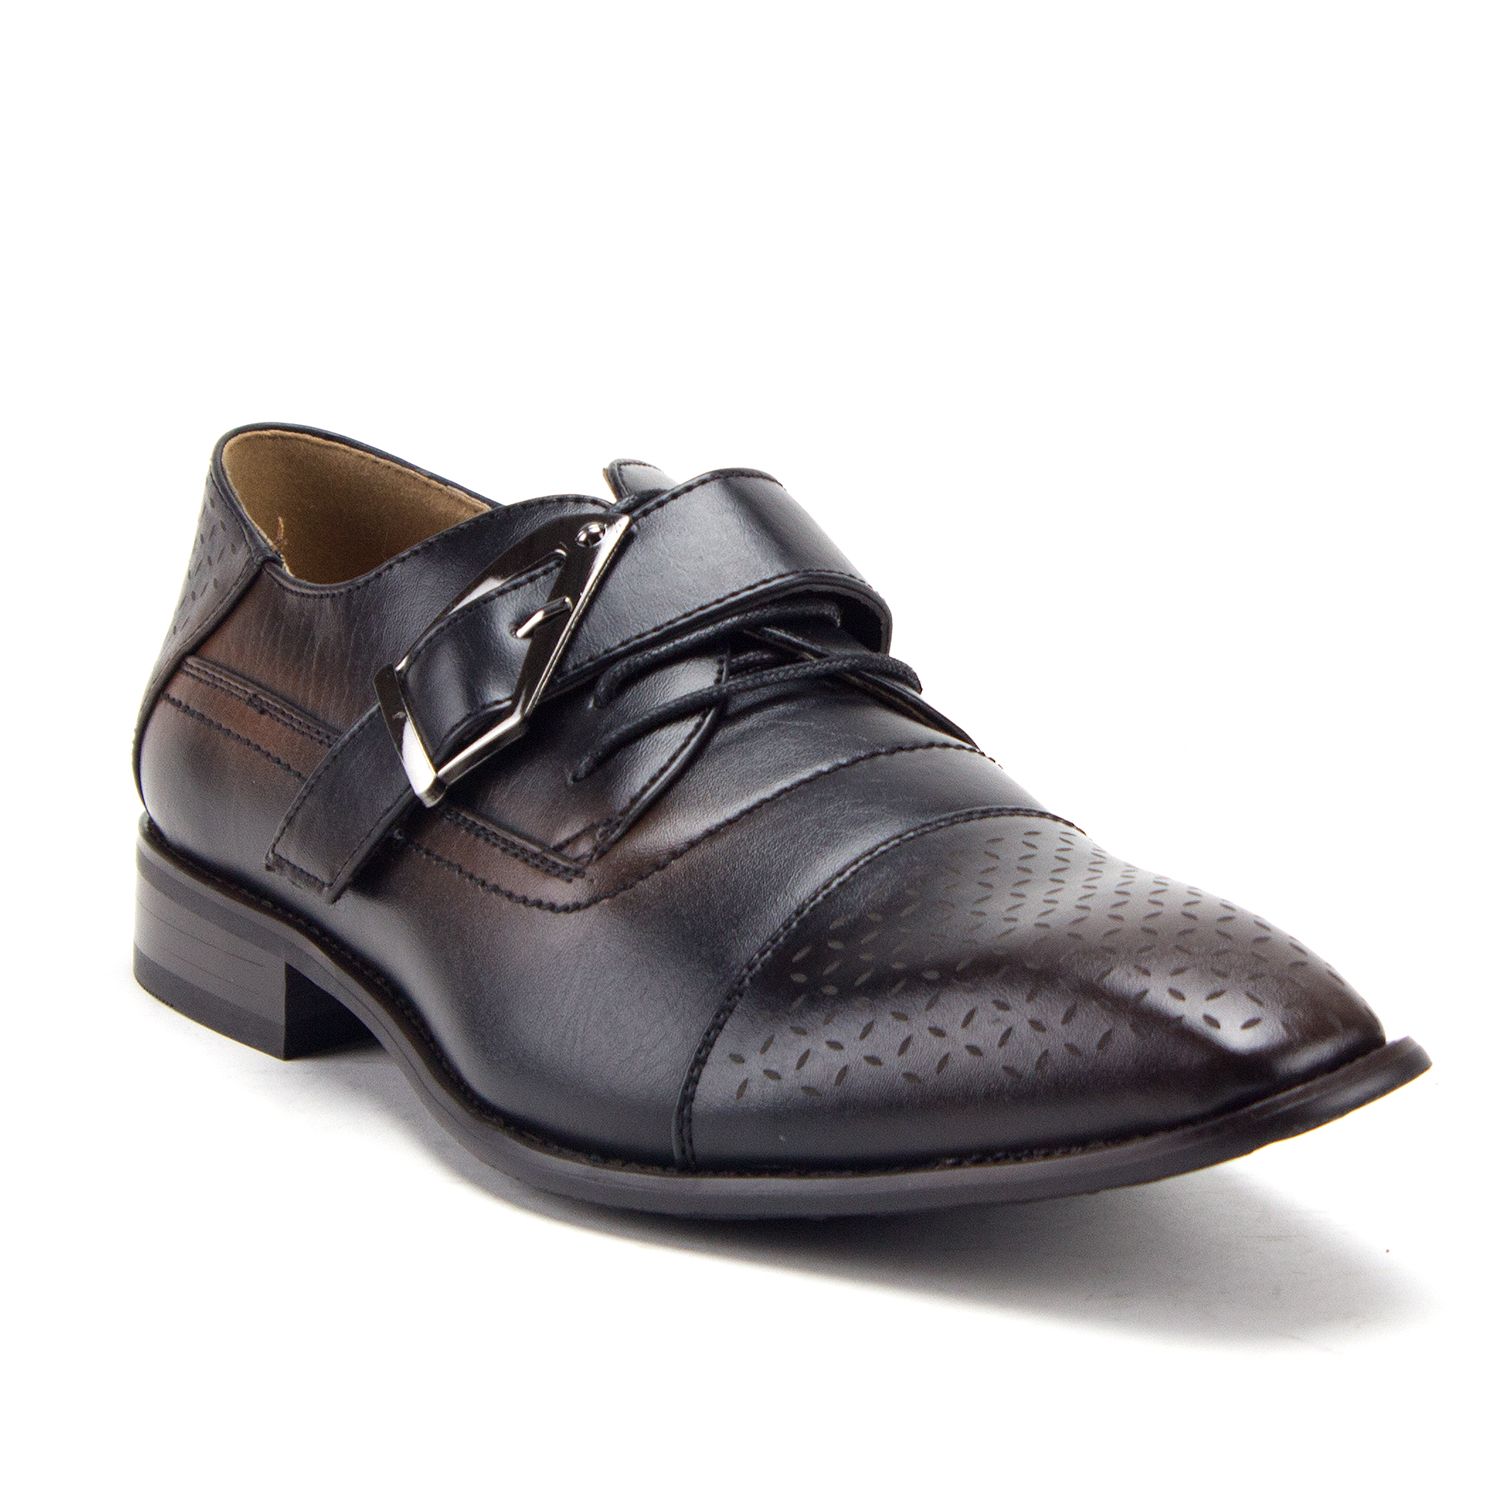 Men's 97711 Cap Toe Monk Strap Lace Up Oxfords Dress Shoes, Black, 10.5 - image 1 of 4